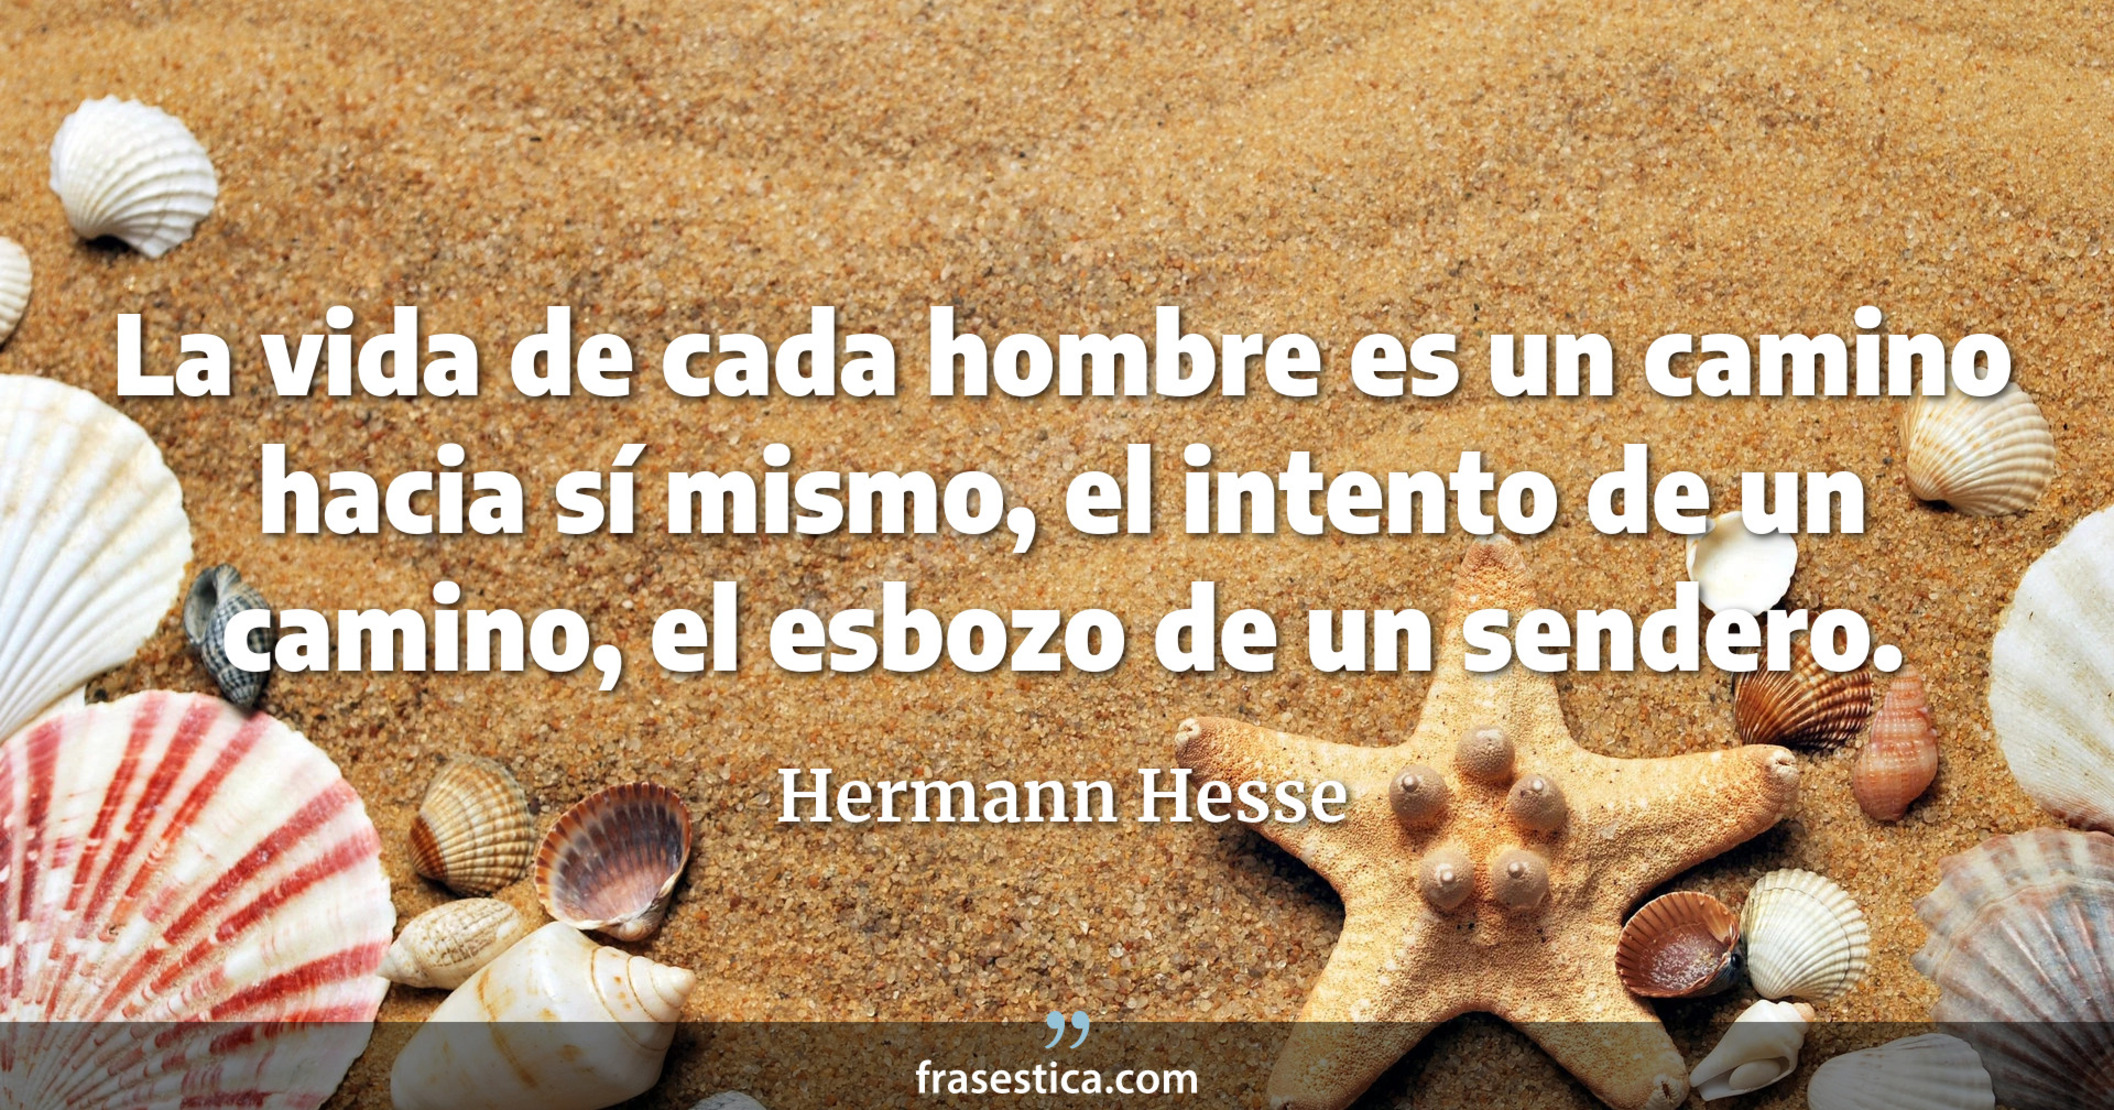 La vida de cada hombre es un camino hacia sí mismo, el intento de un camino, el esbozo de un sendero. - Hermann Hesse